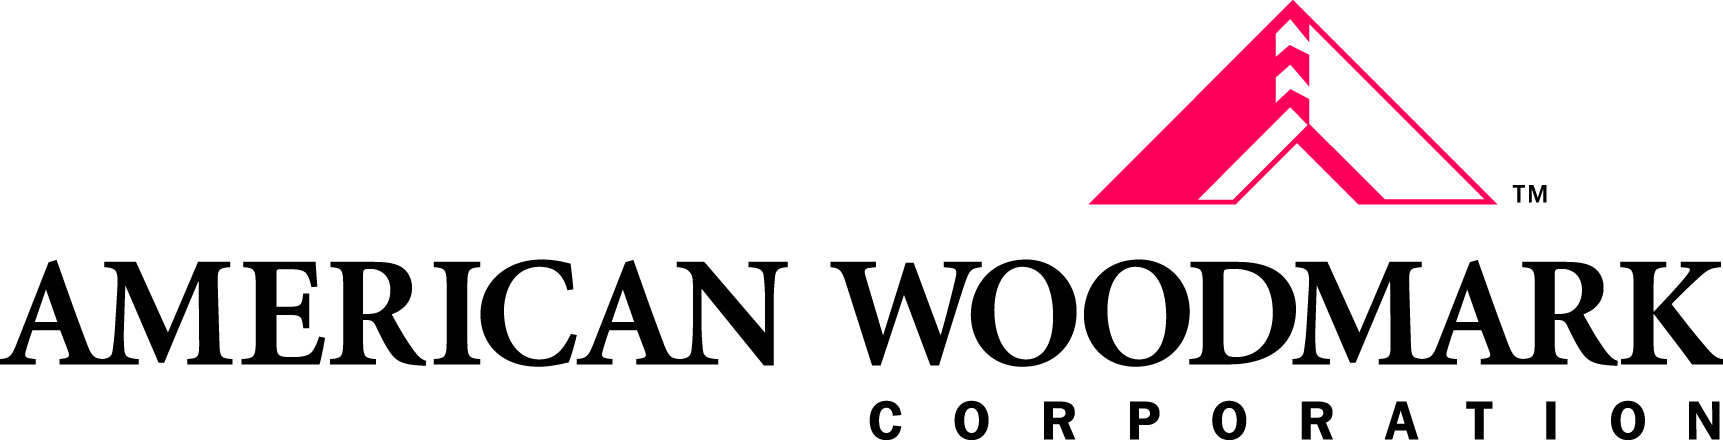 AWC_Corp-Logo_PMS199_K_OT copy